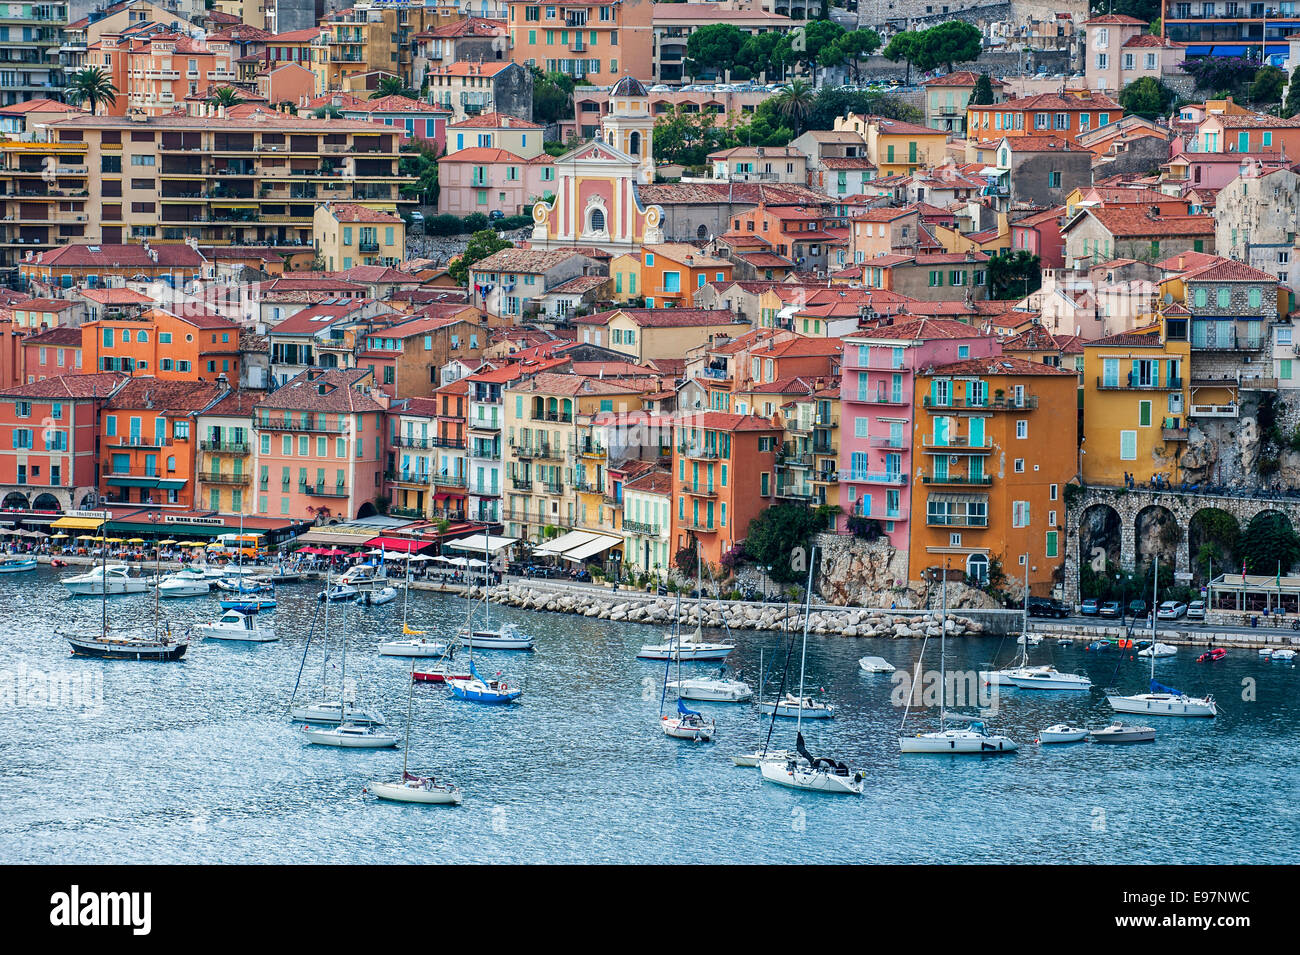 Segelboote und bunten Häusern in der Stadt Nizza an der Côte d ' Azur, Côte d ' Azur, Alpes-Maritimes, Frankreich Stockfoto